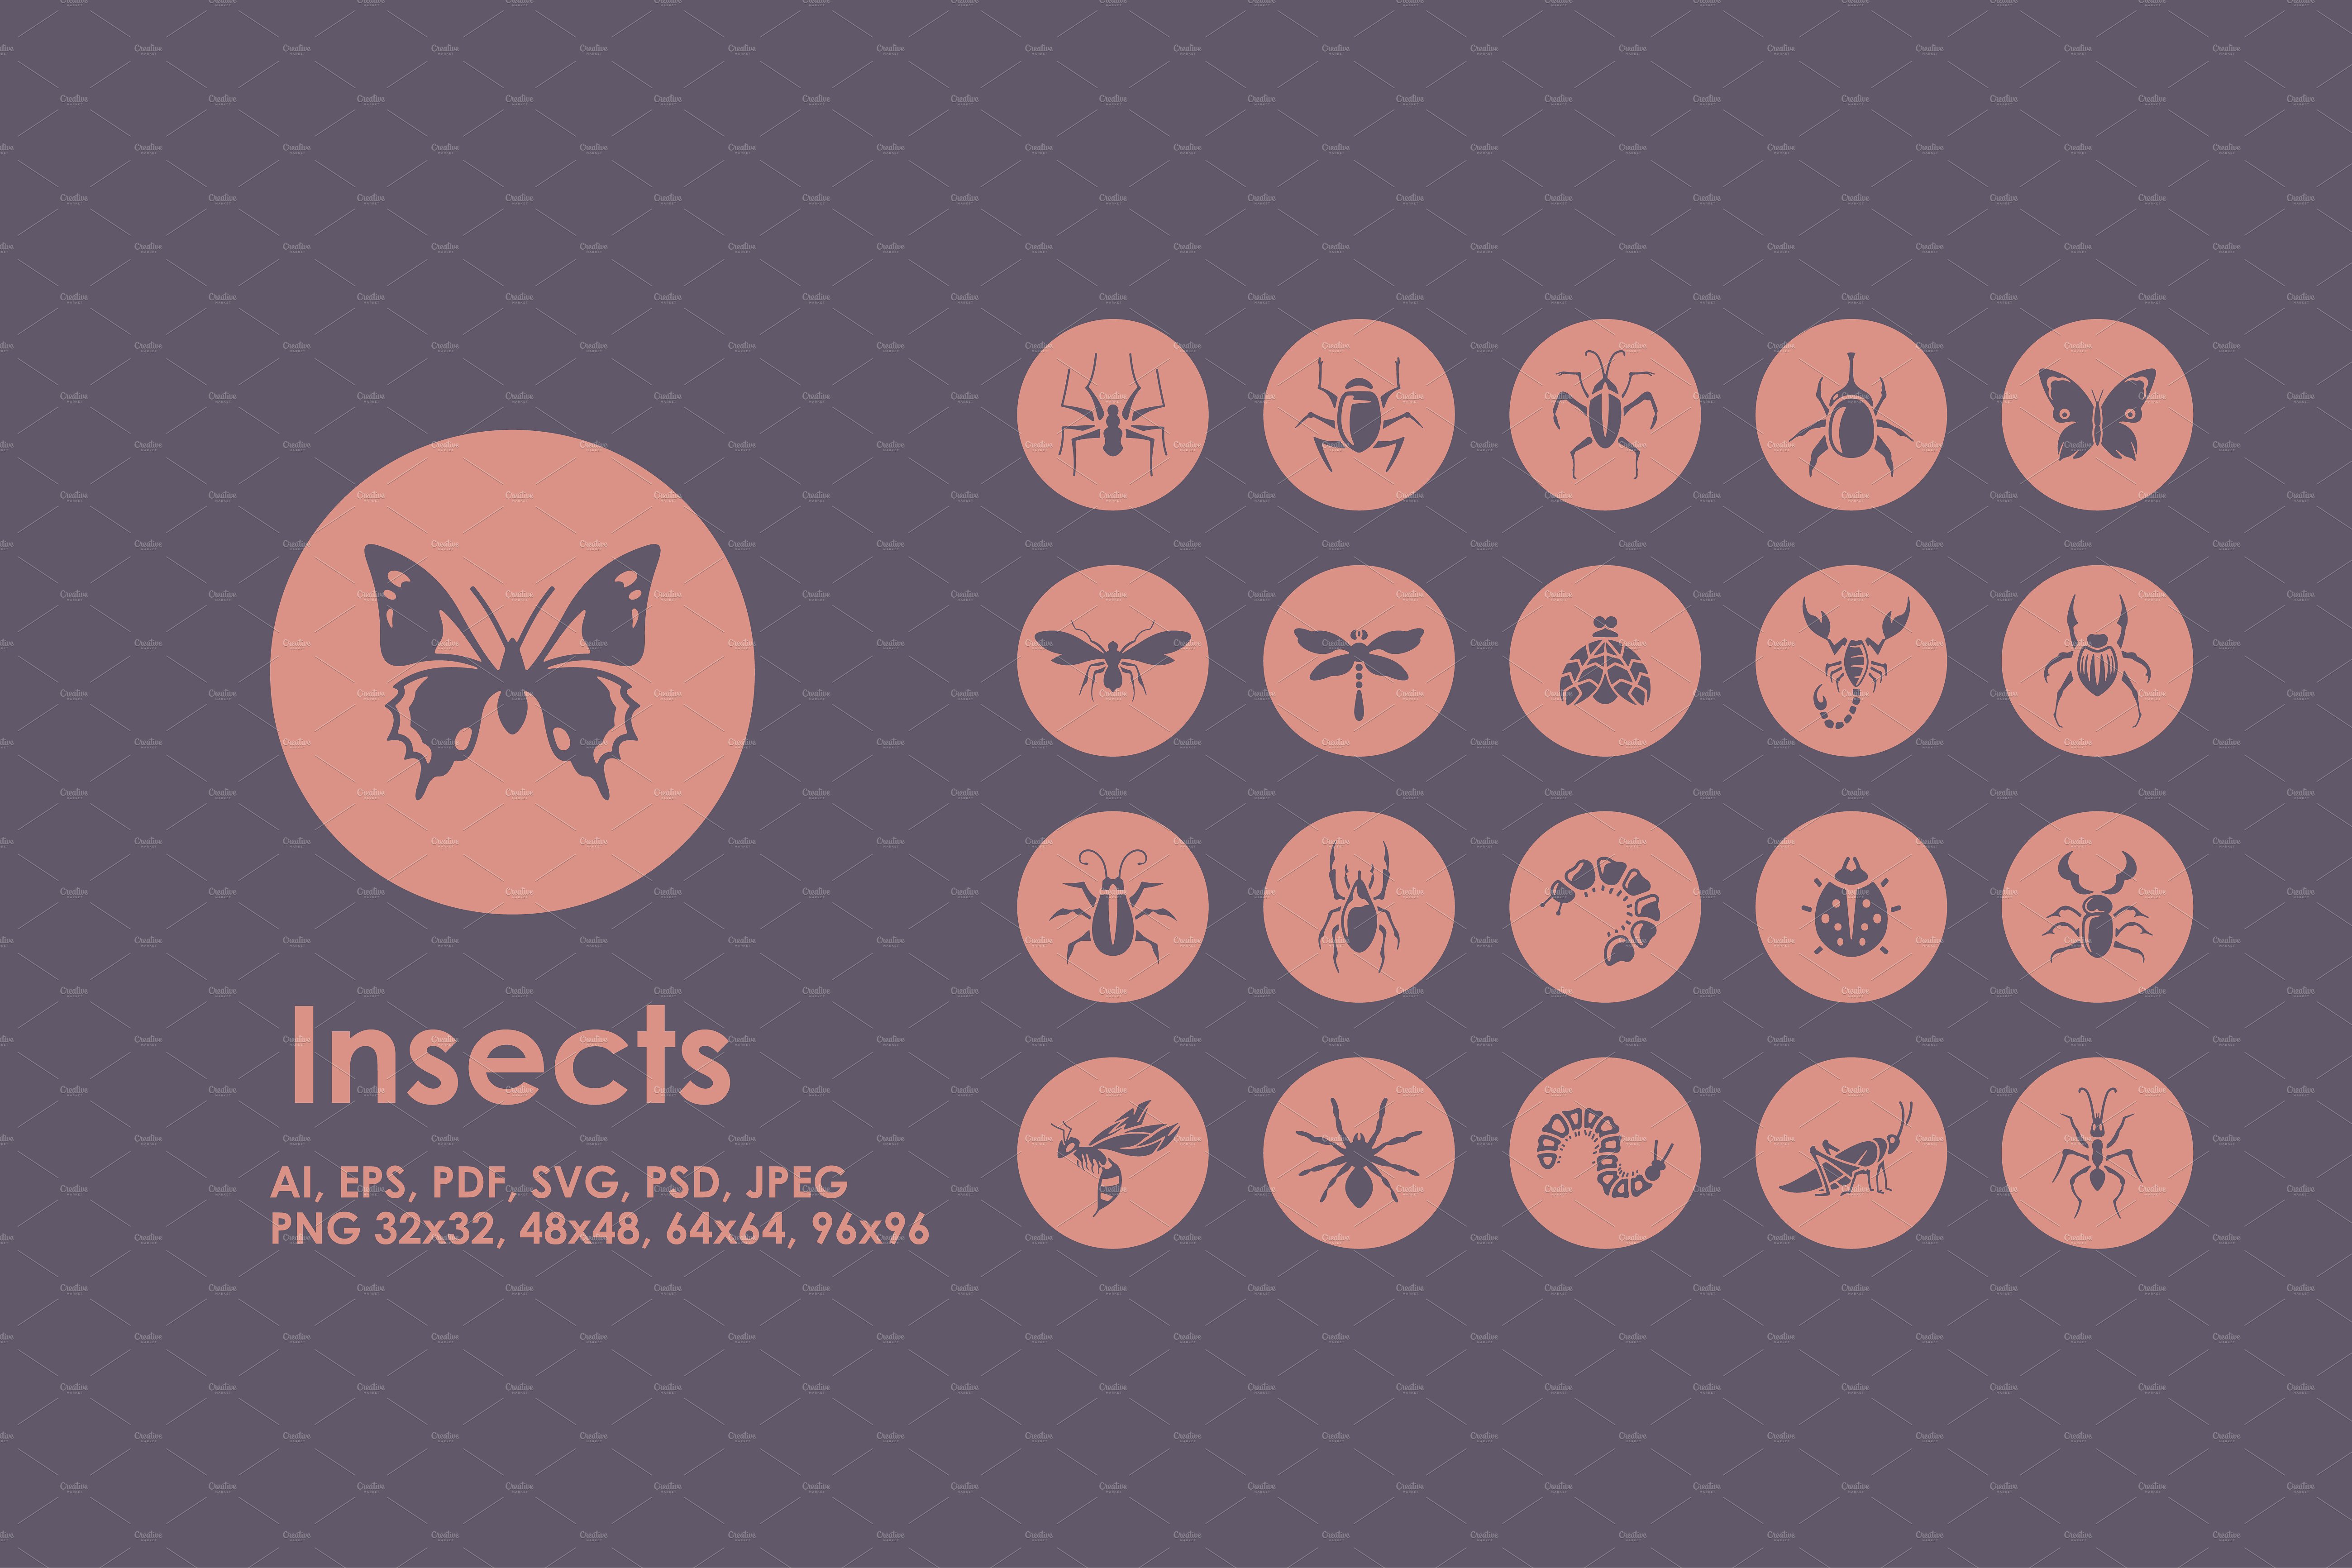 一组常见昆虫图标  Insects icons插图